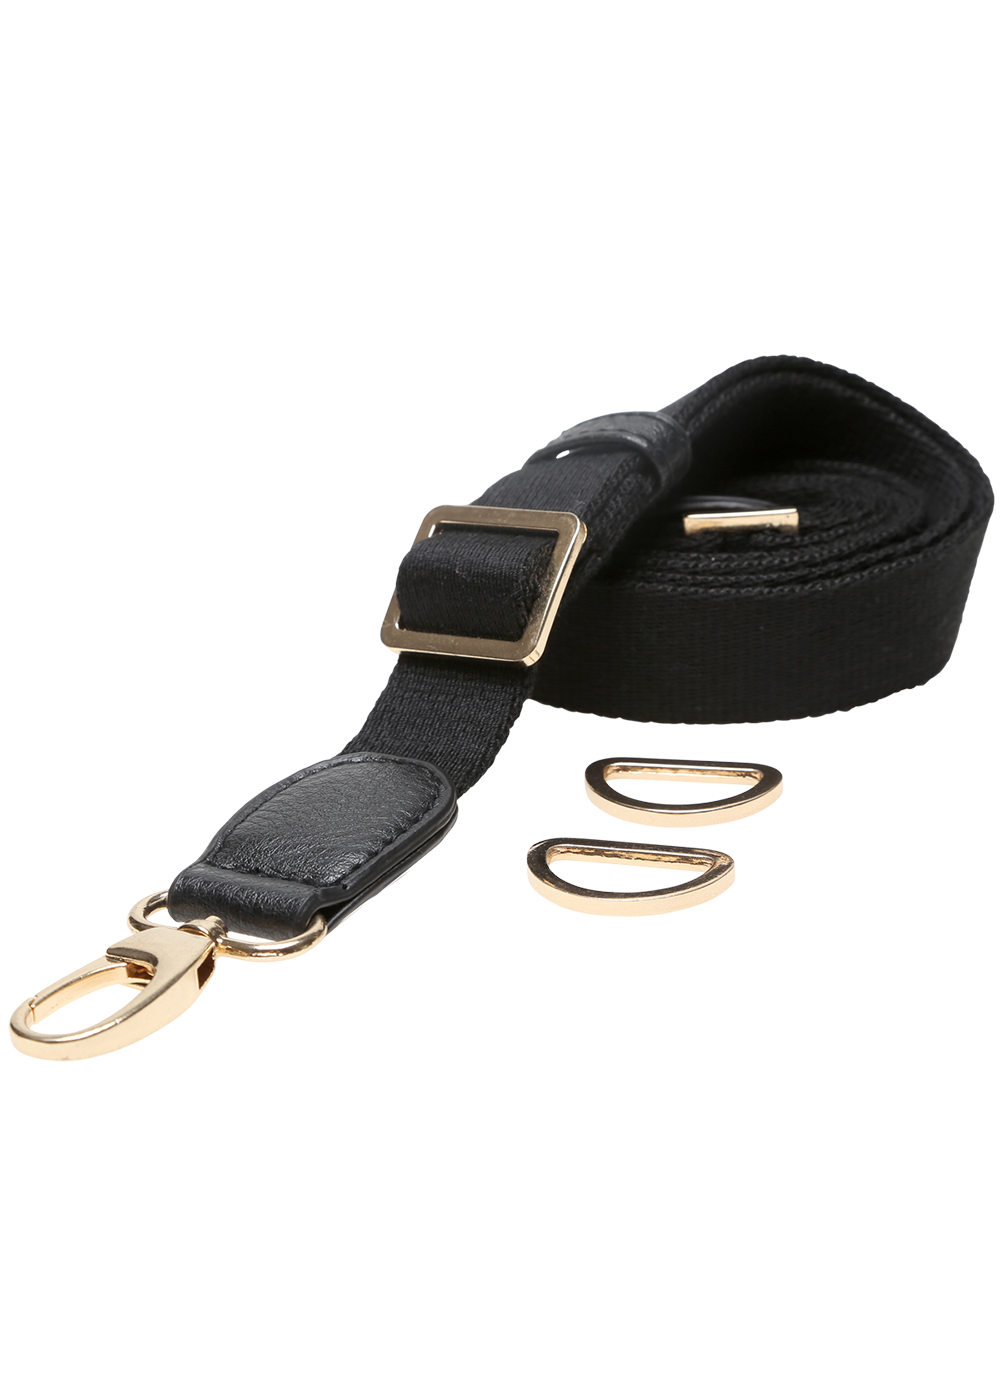 Handbag shoulder strap, cotton - adjustable, L85 cm - 125 cm, W25 mm ...